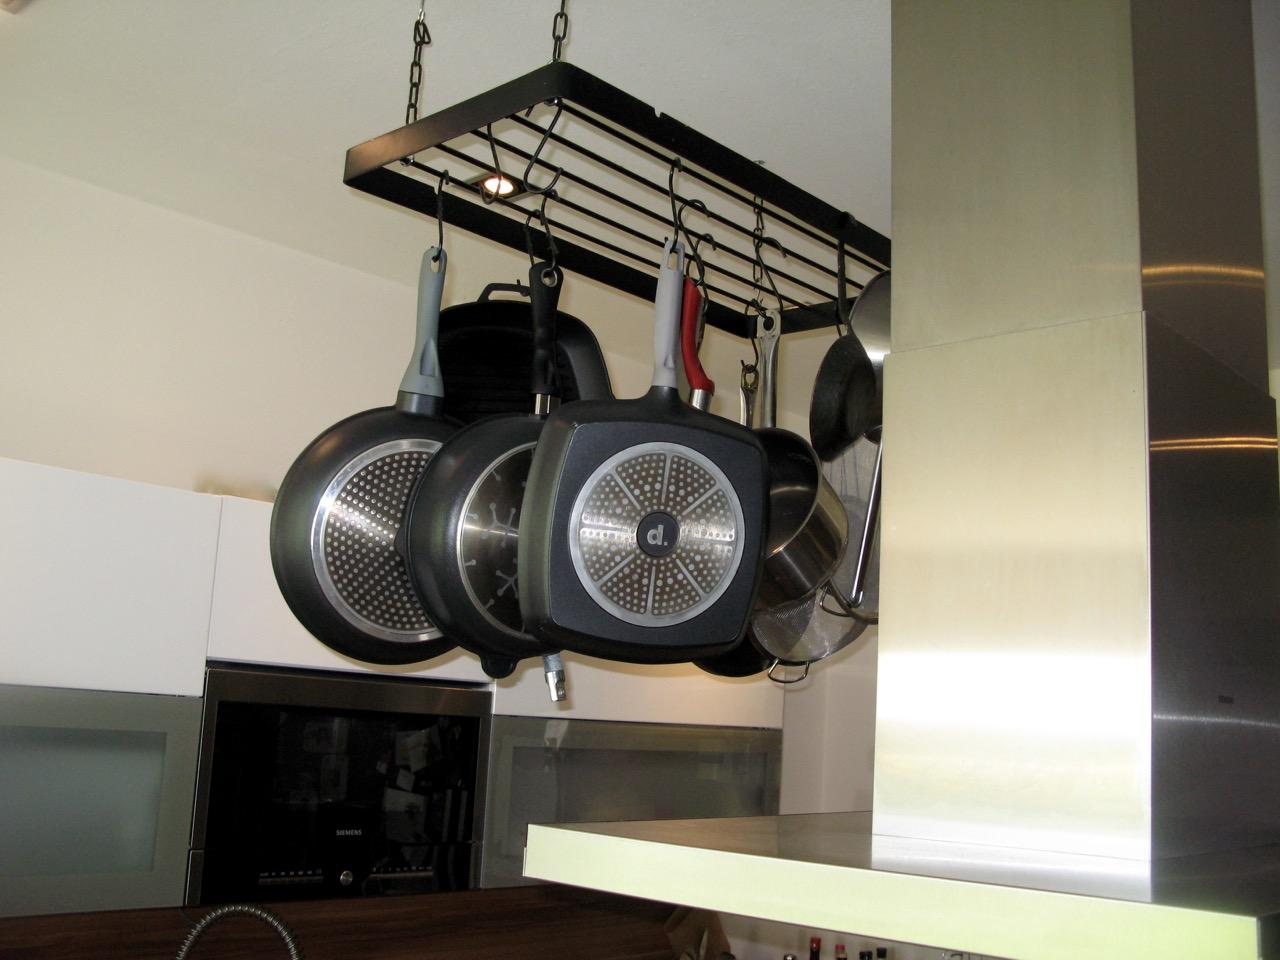 Was ich in unserer Küche sehr mag, ist das abgehängte Metall-Rack, an dem unsere Koch-Utensilien Platz finden.
#küche